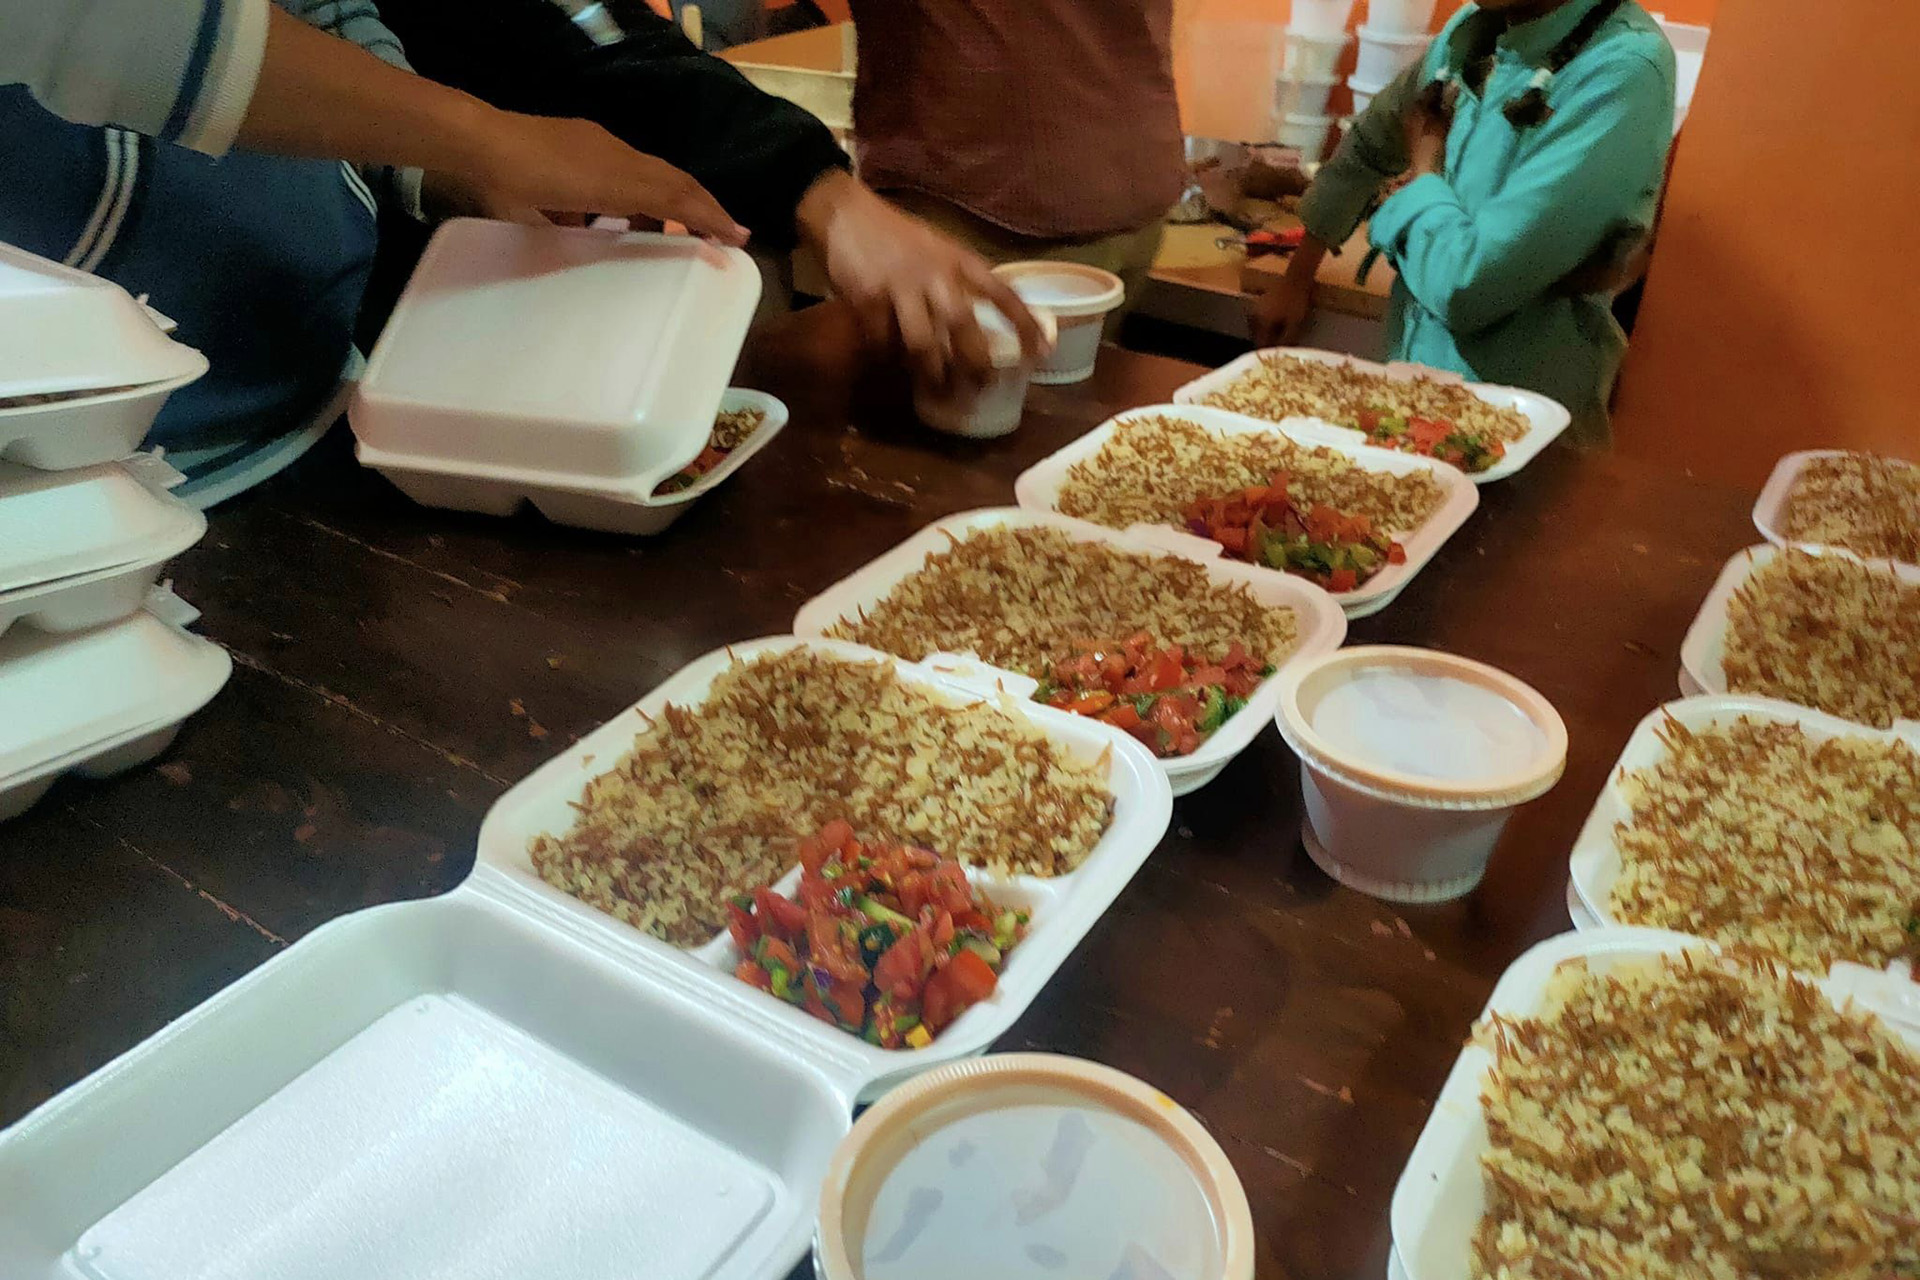 مطبخ الخير.. موروث رمضاني لم يتغير عند بدو سيناء | أسلوب حياة – البوكس نيوز